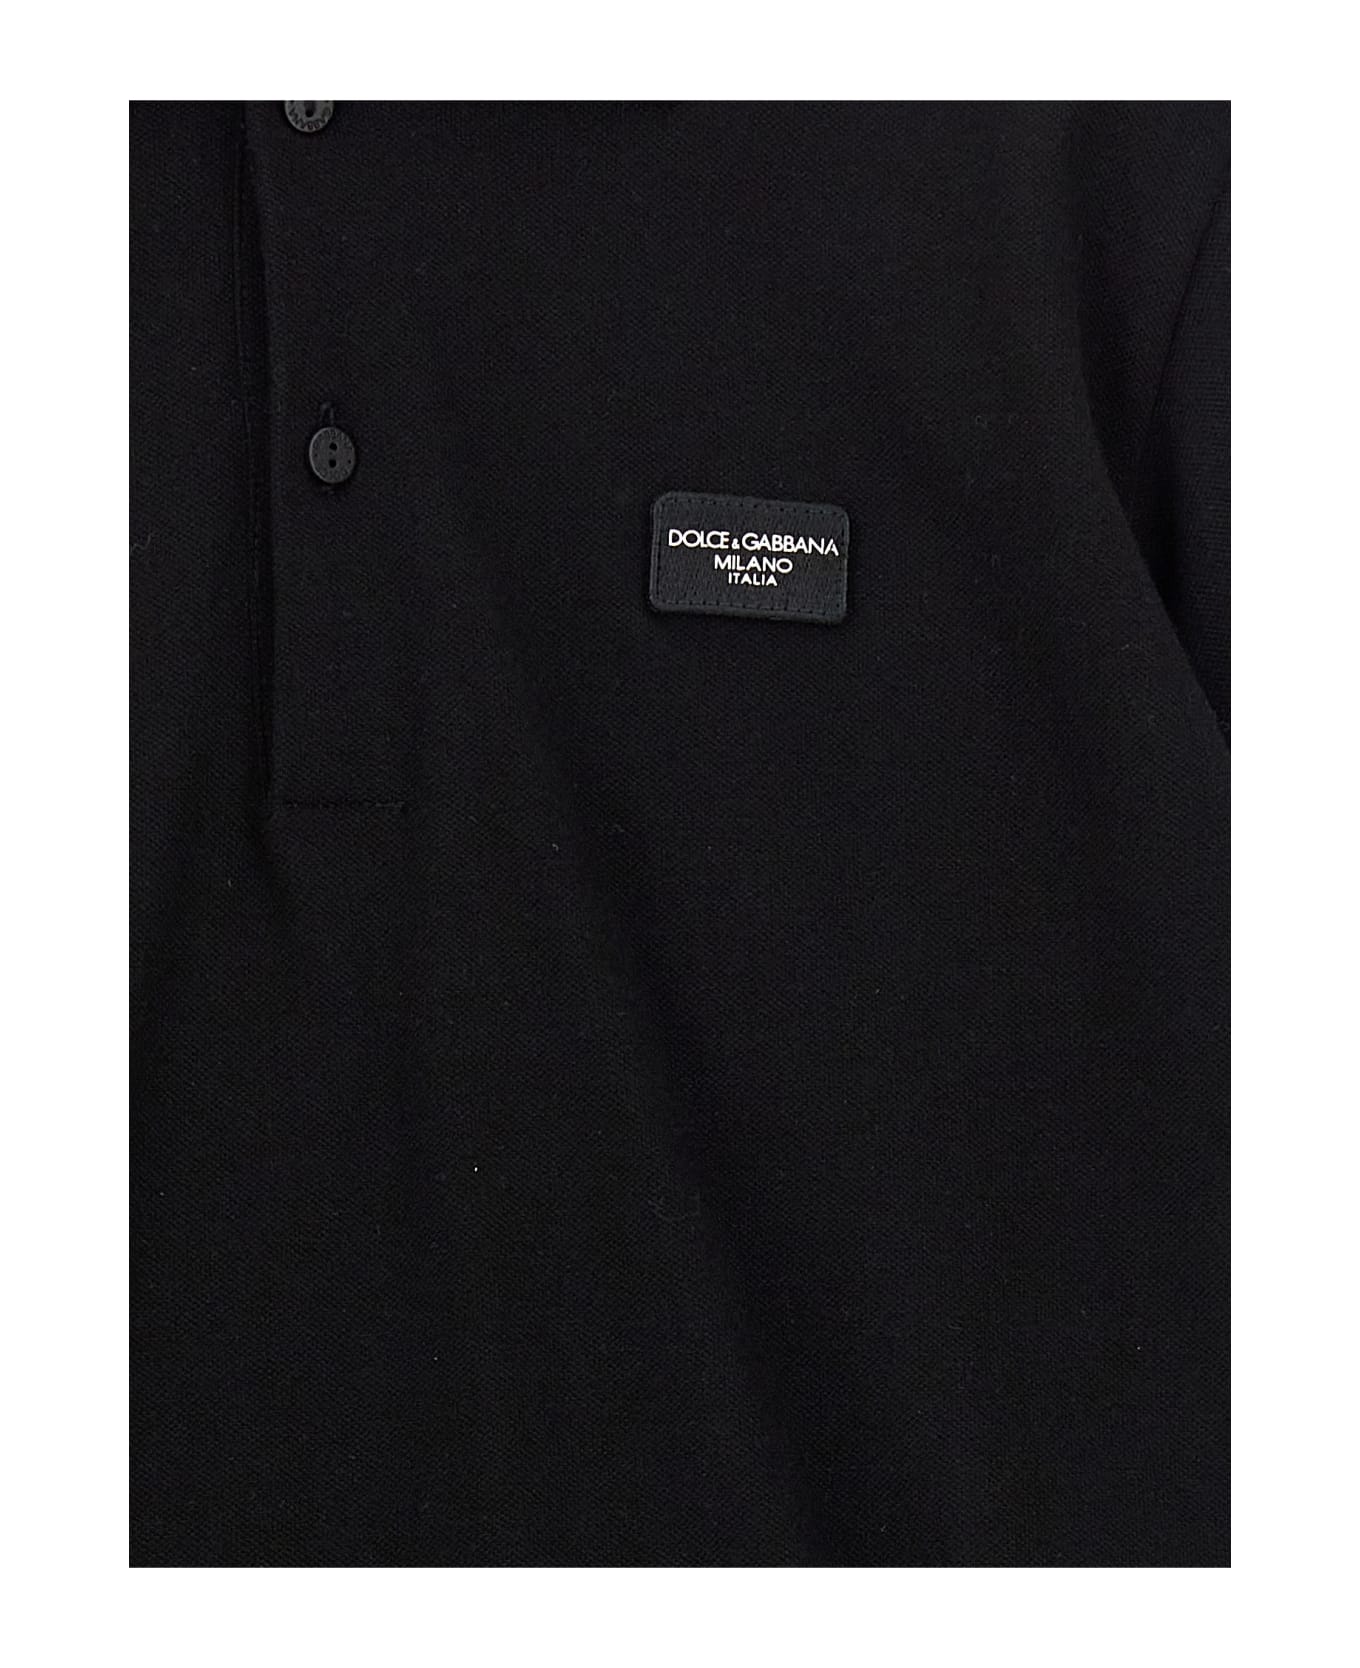 Dolce & Gabbana Logo Schwarz Polo Shirt - Black  